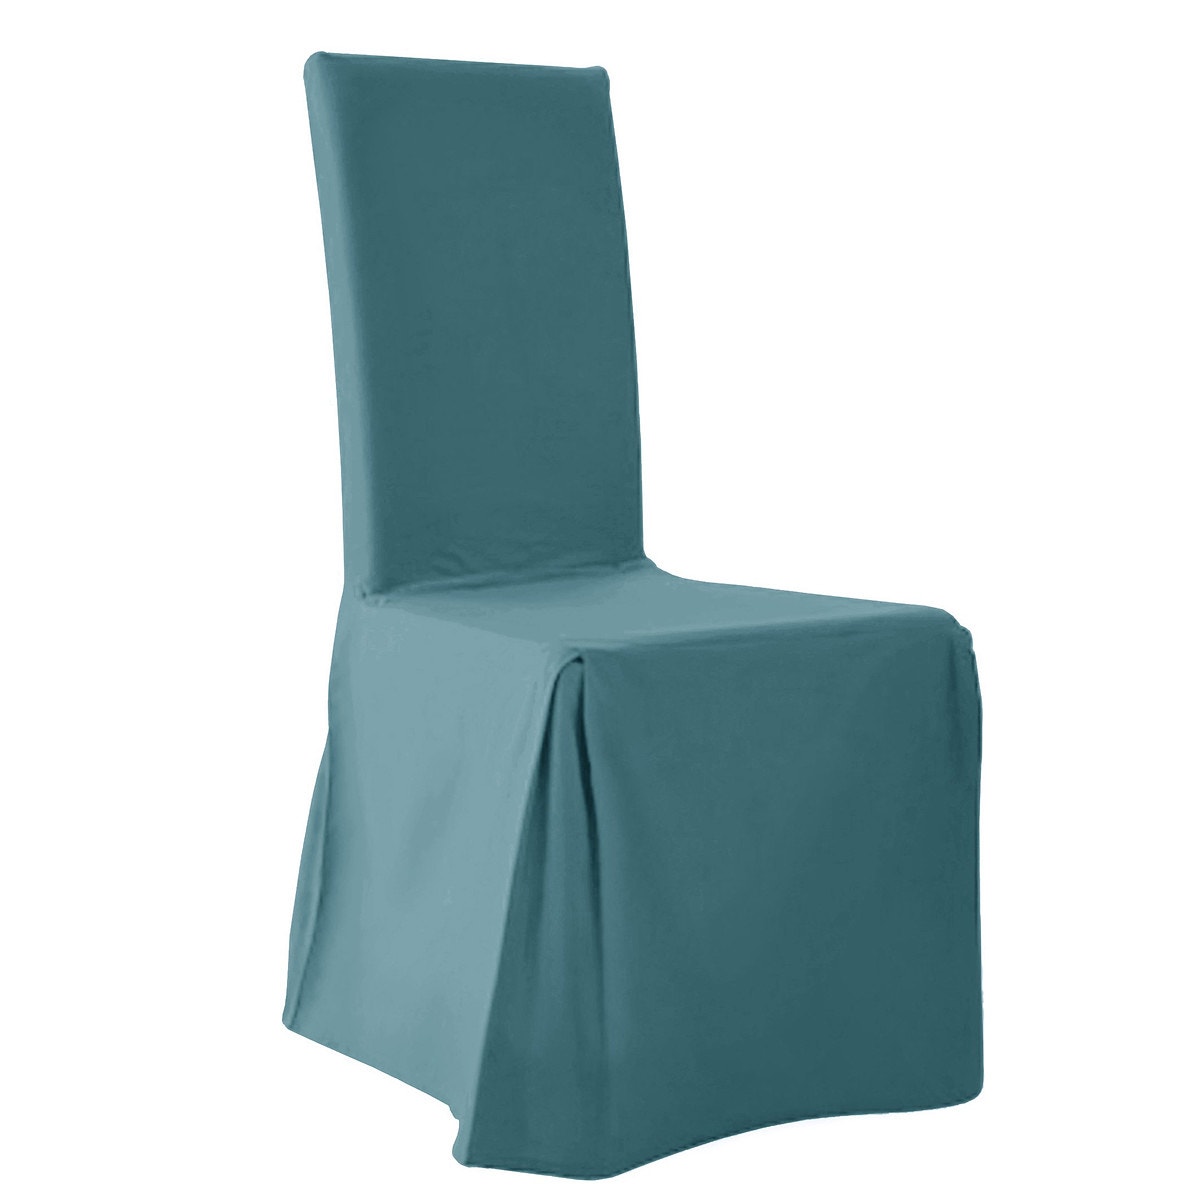 Κάλυμμα καρέκλας (σετ των 2)